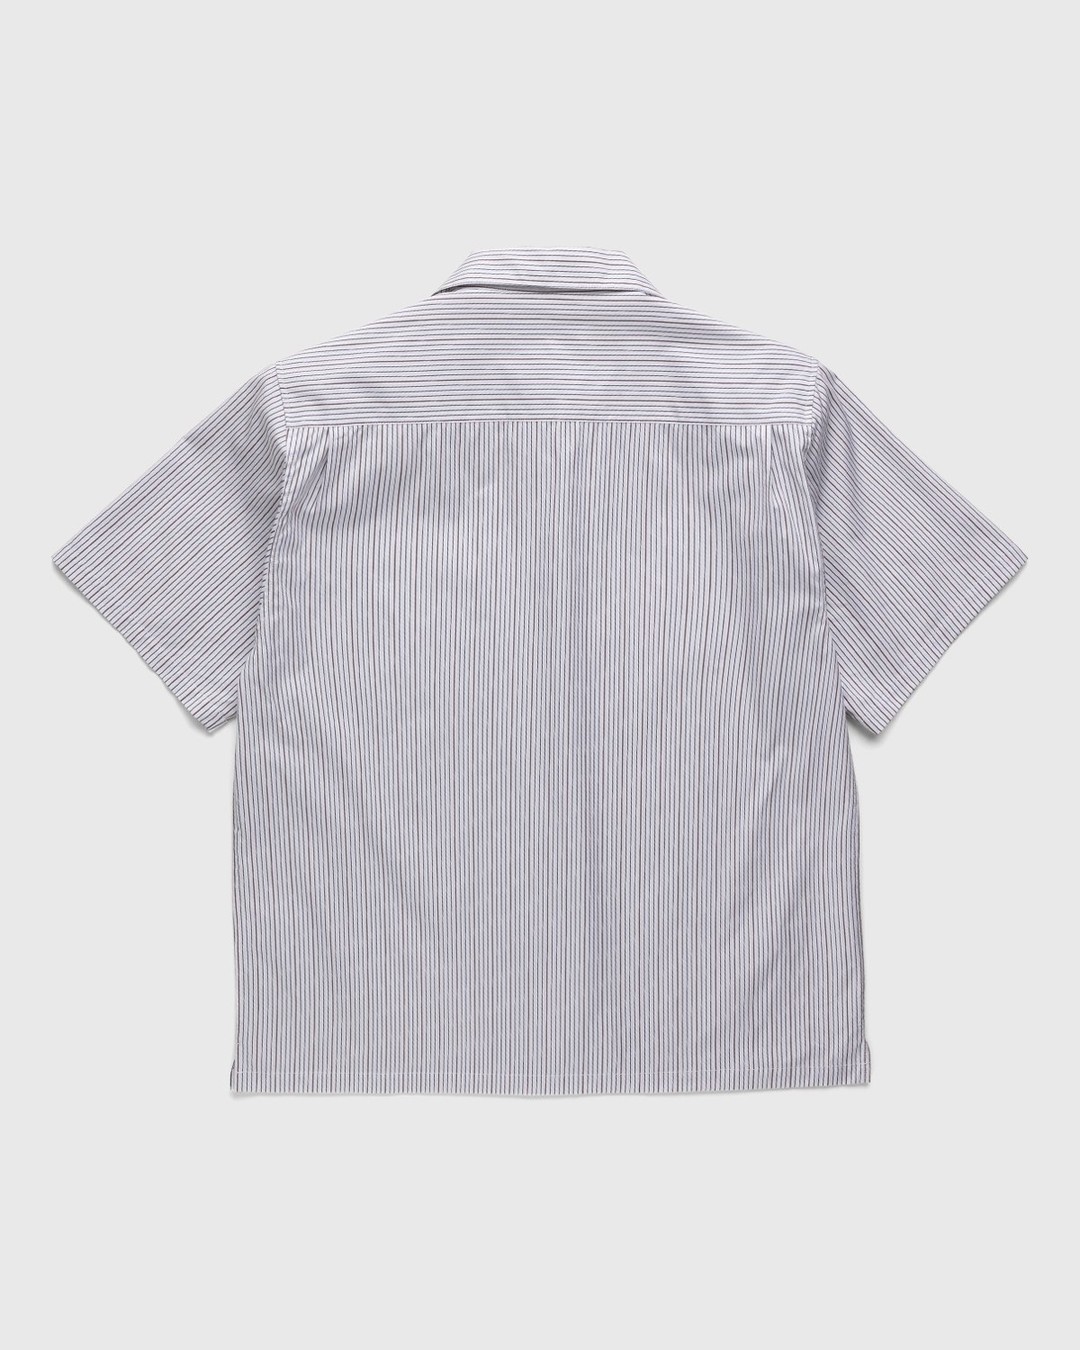 Highsnobiety – Striped Poplin Short-Sleeve Shirt White/Black - Shortsleeve Shirts - White - Image 2